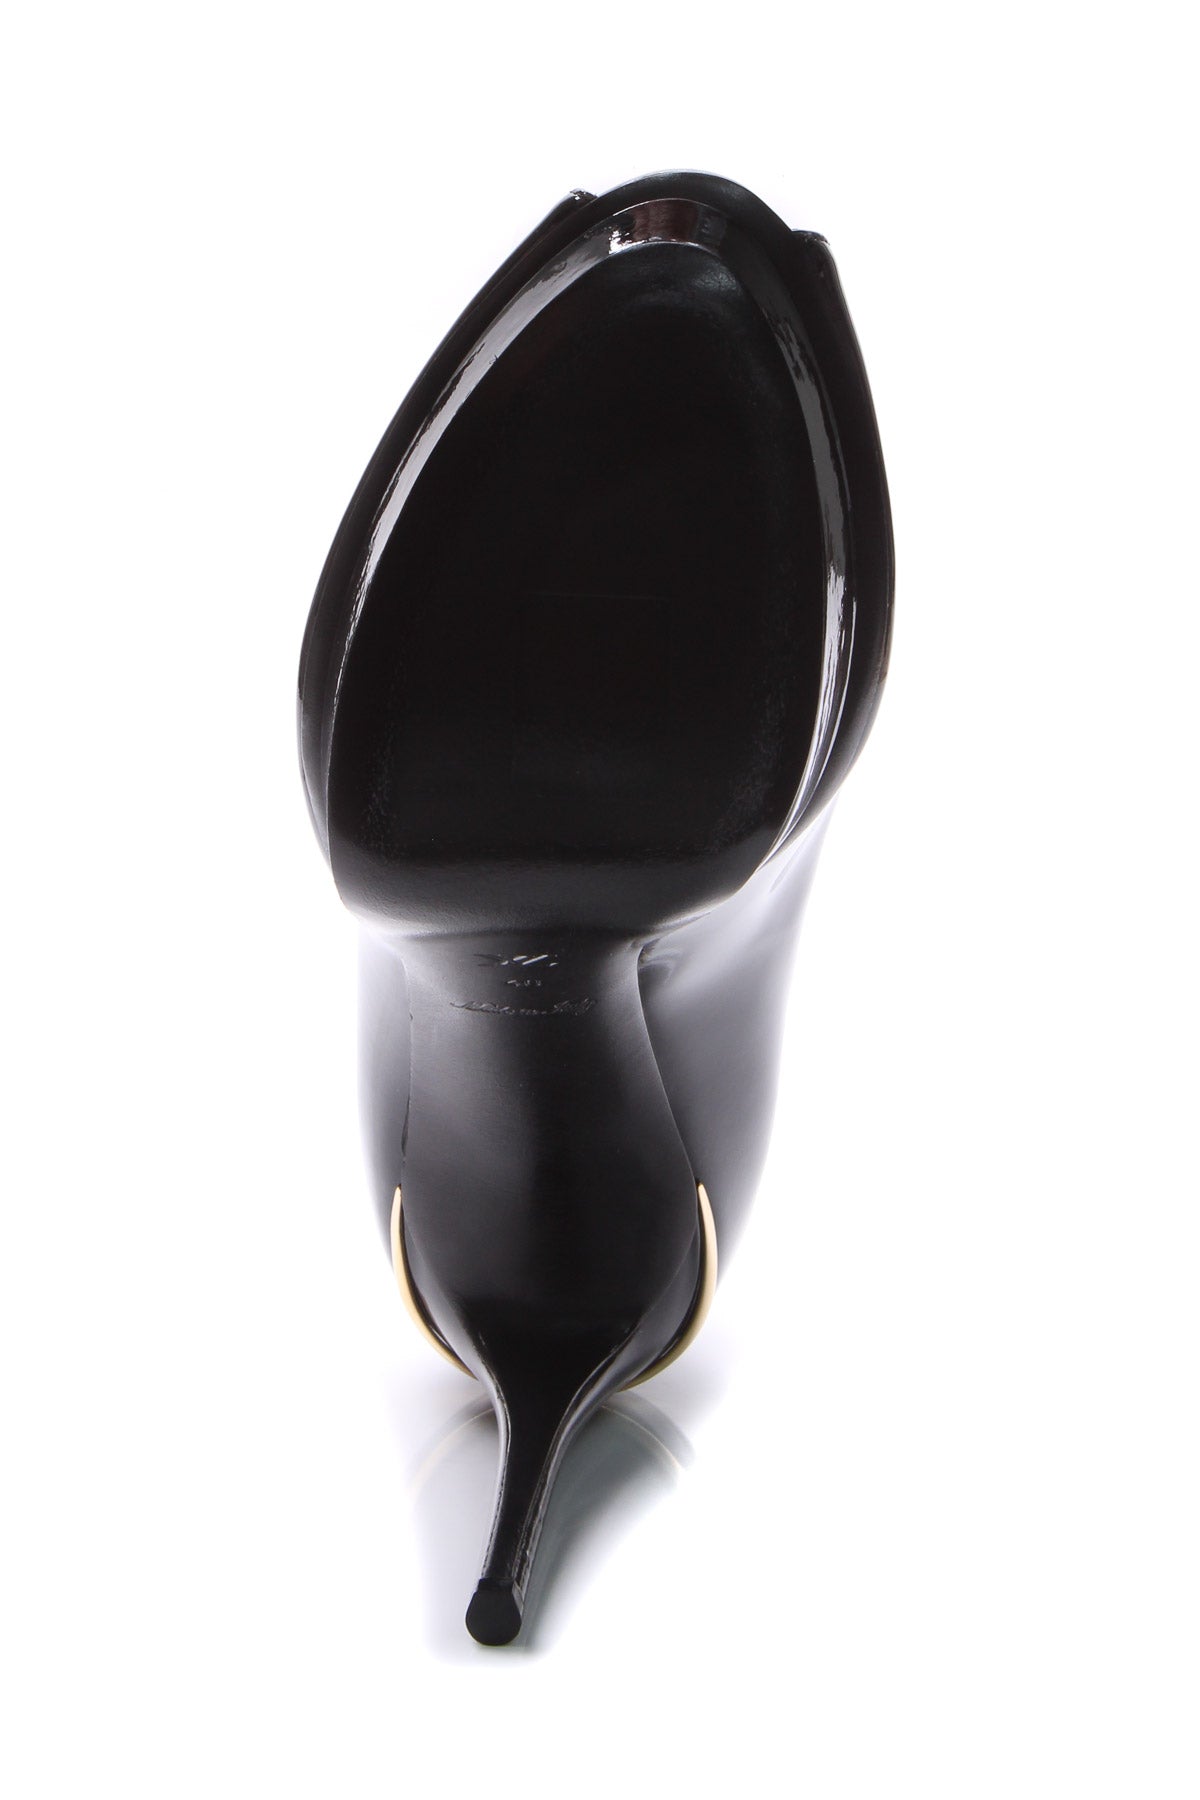 Louis Vuitton Archlight Pump BLACK. Size 39.5